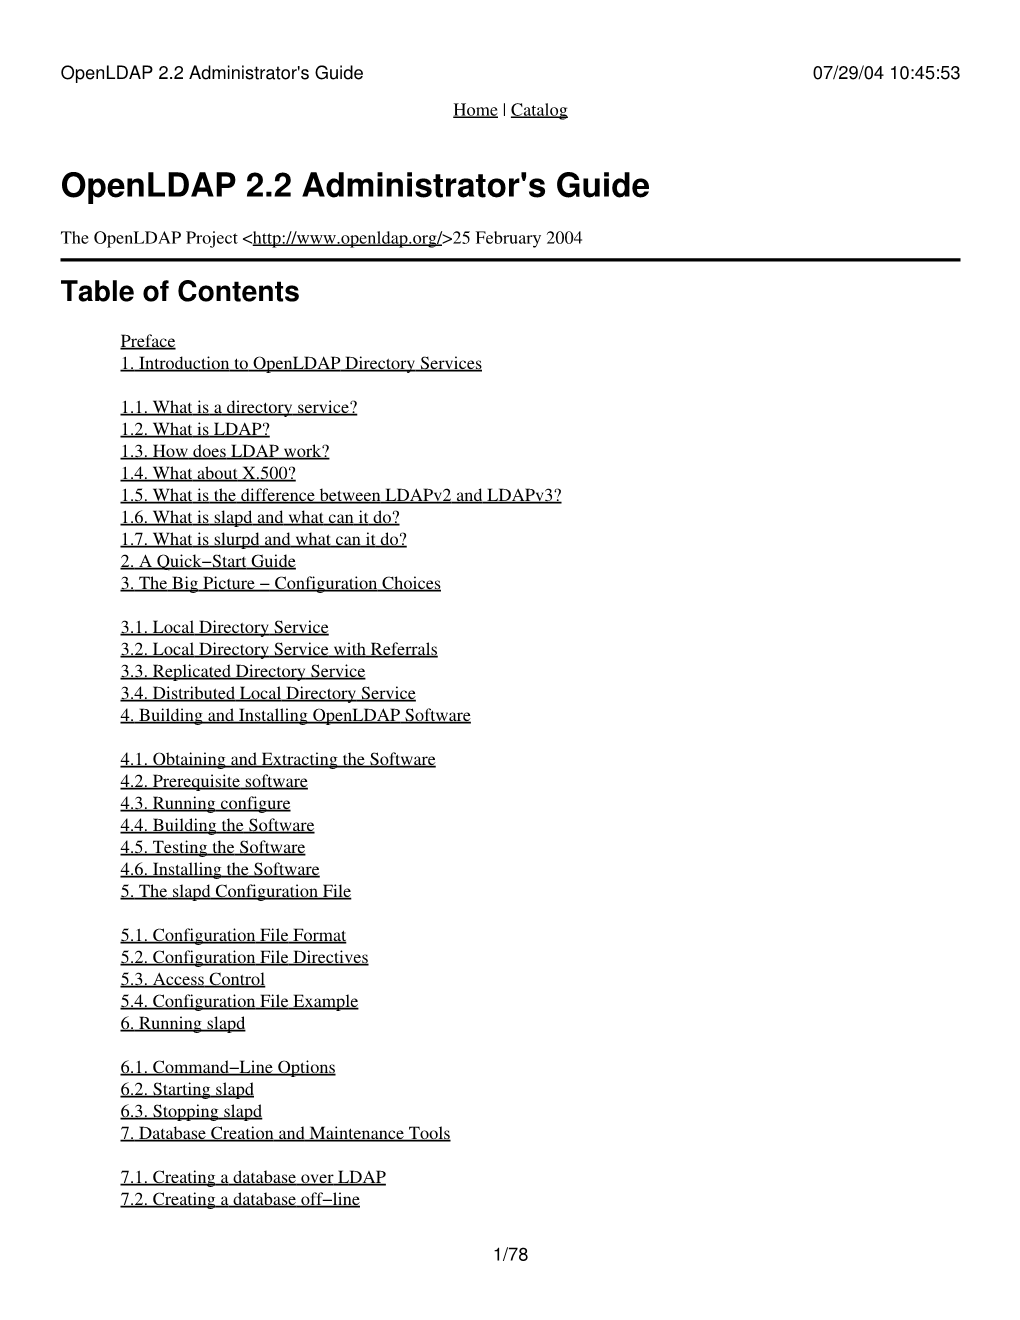 Openldap 2.2 Administrator's Guide 07/29/04 10:45:53 Home | Catalog